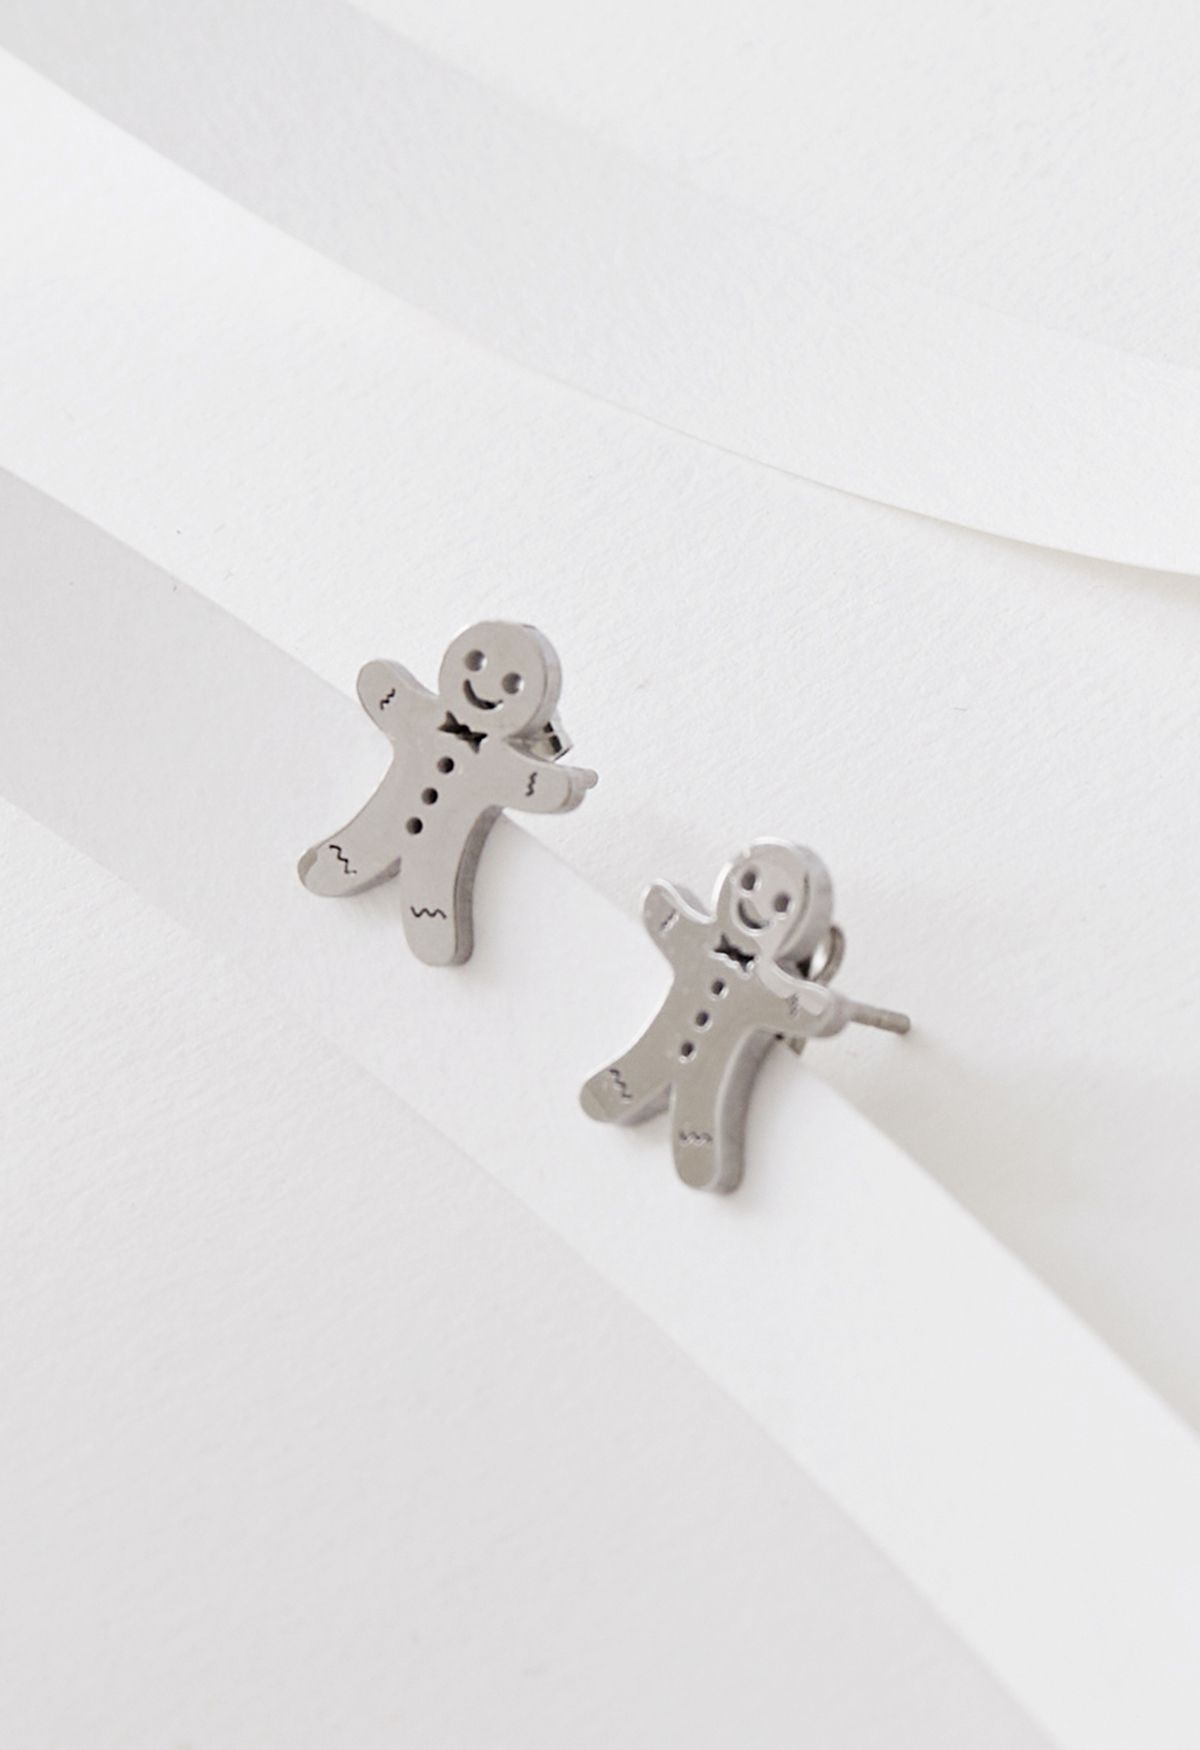 Cute Biscuit Man Earrings in Silver